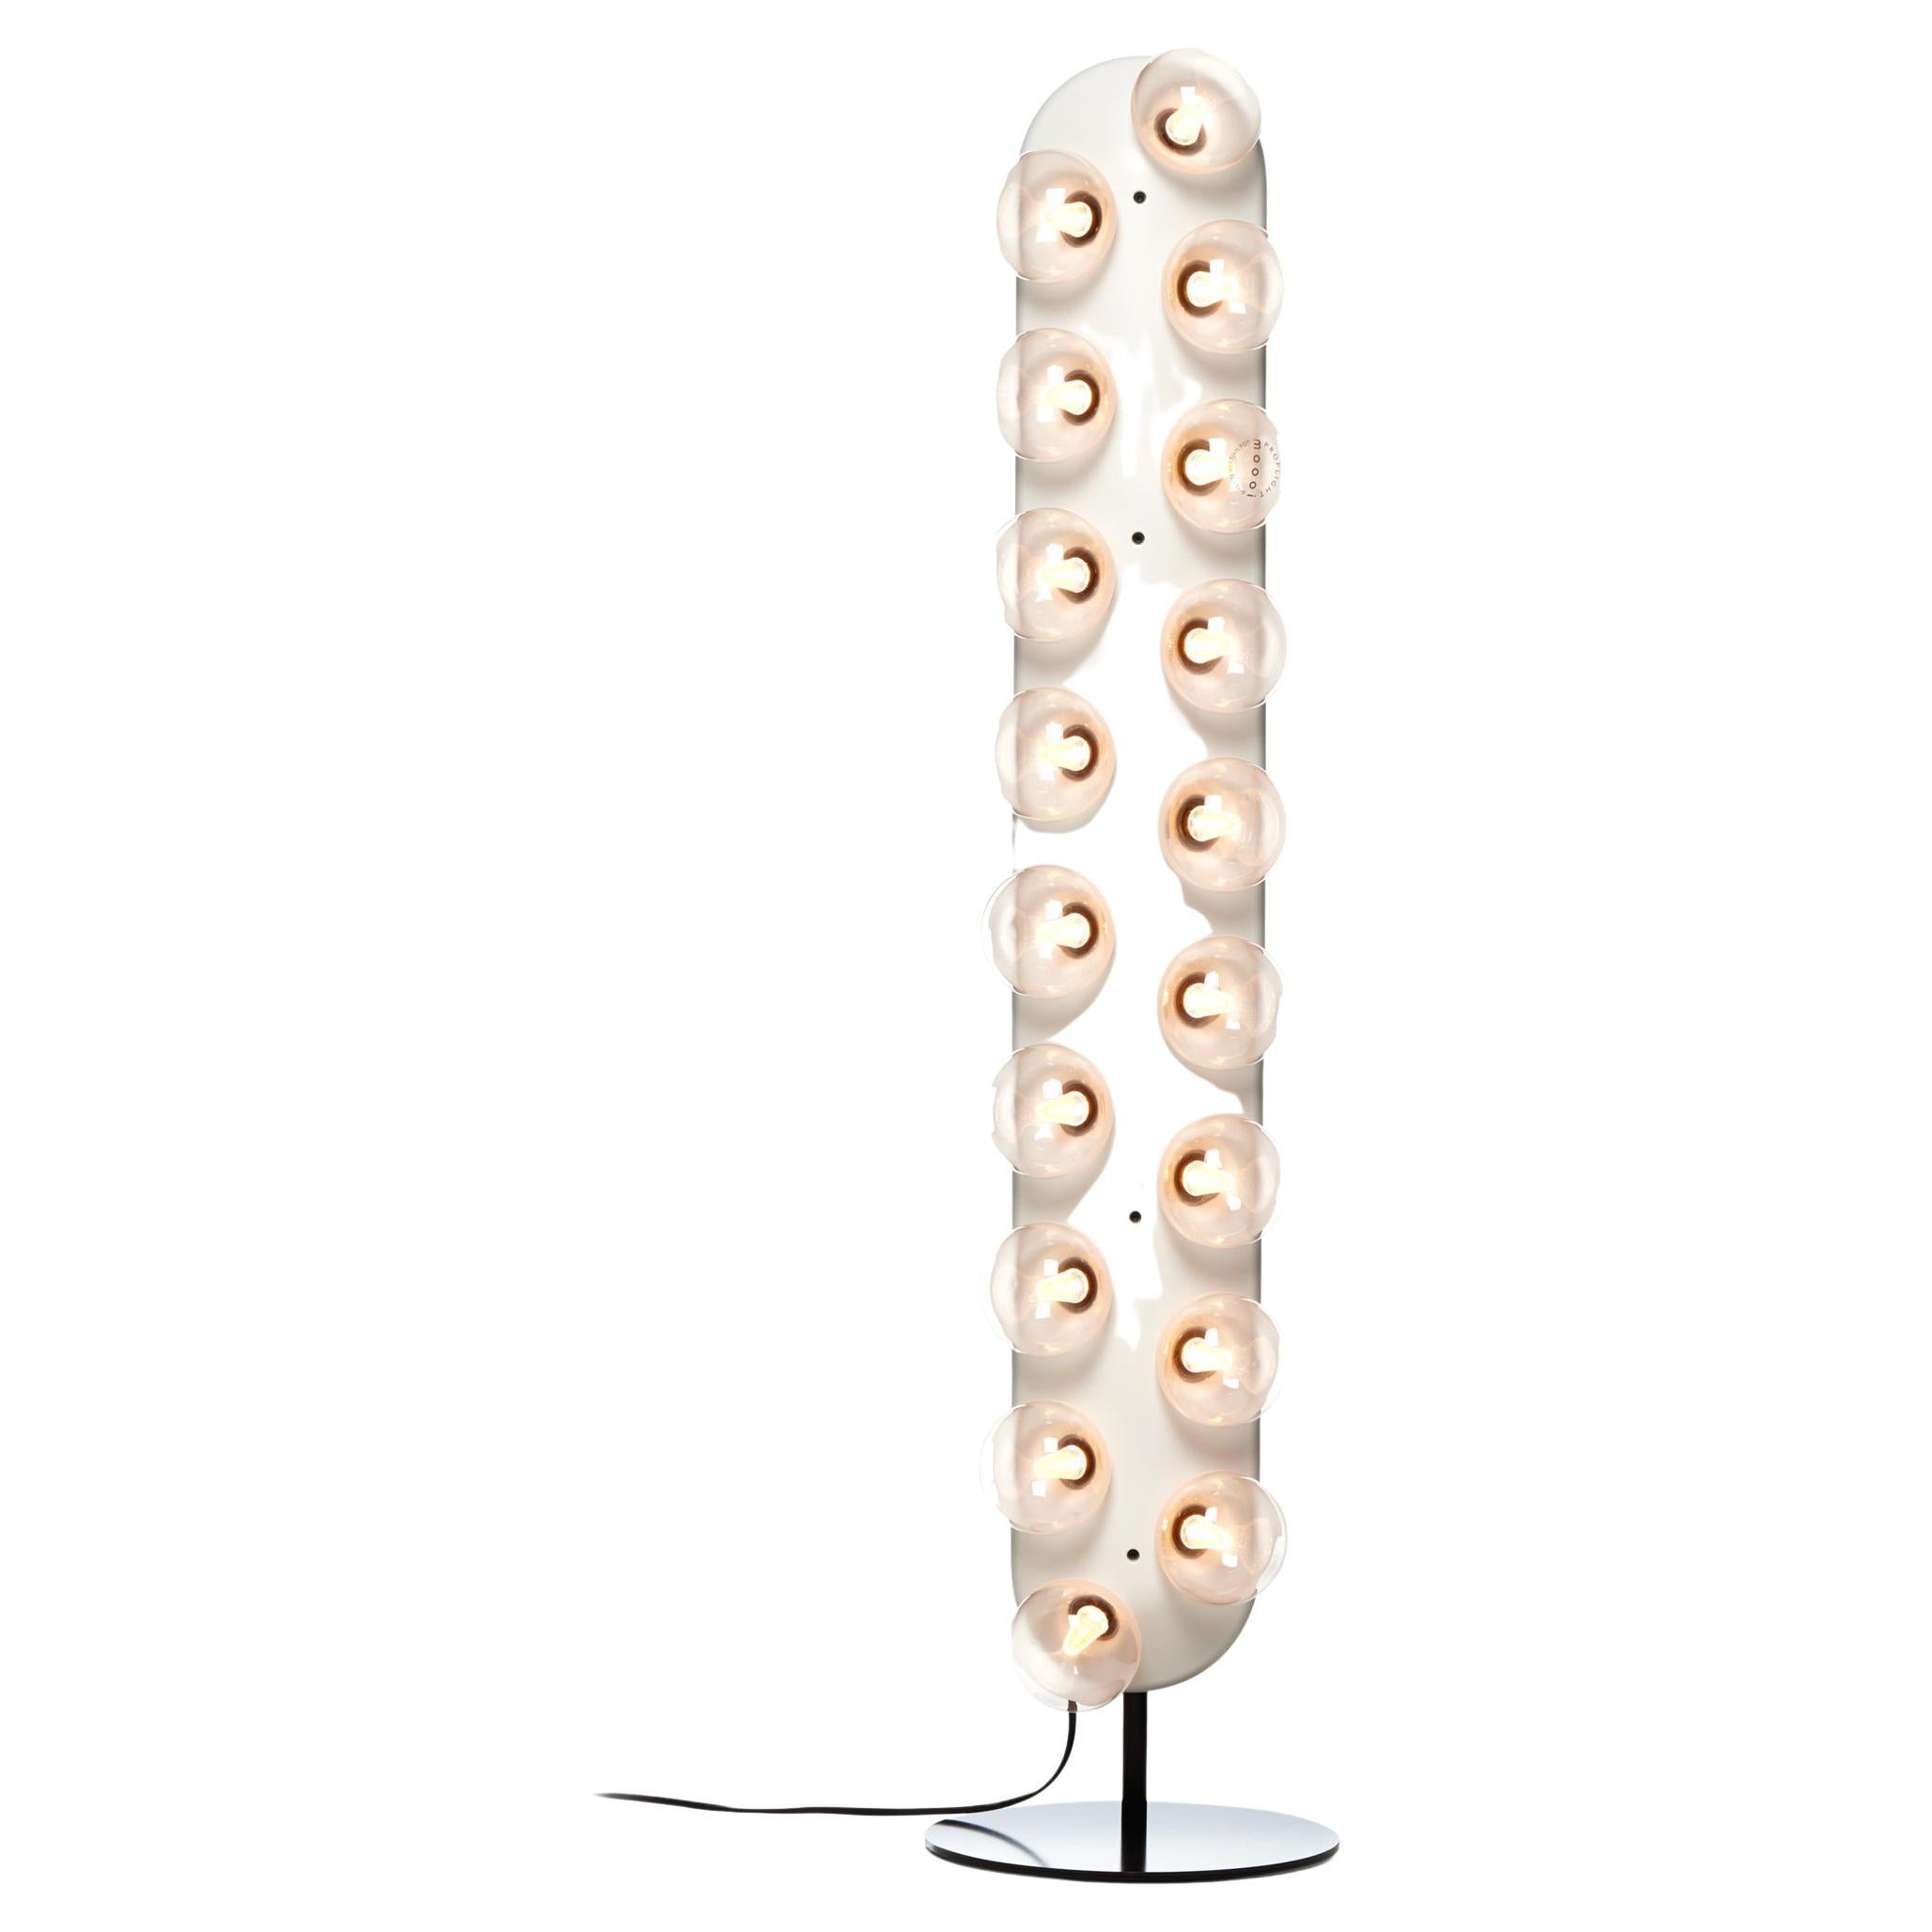 Lampadaire vertical Moooi Prop Light avec ampoules en verre blanc chaud de Bertjan Pot